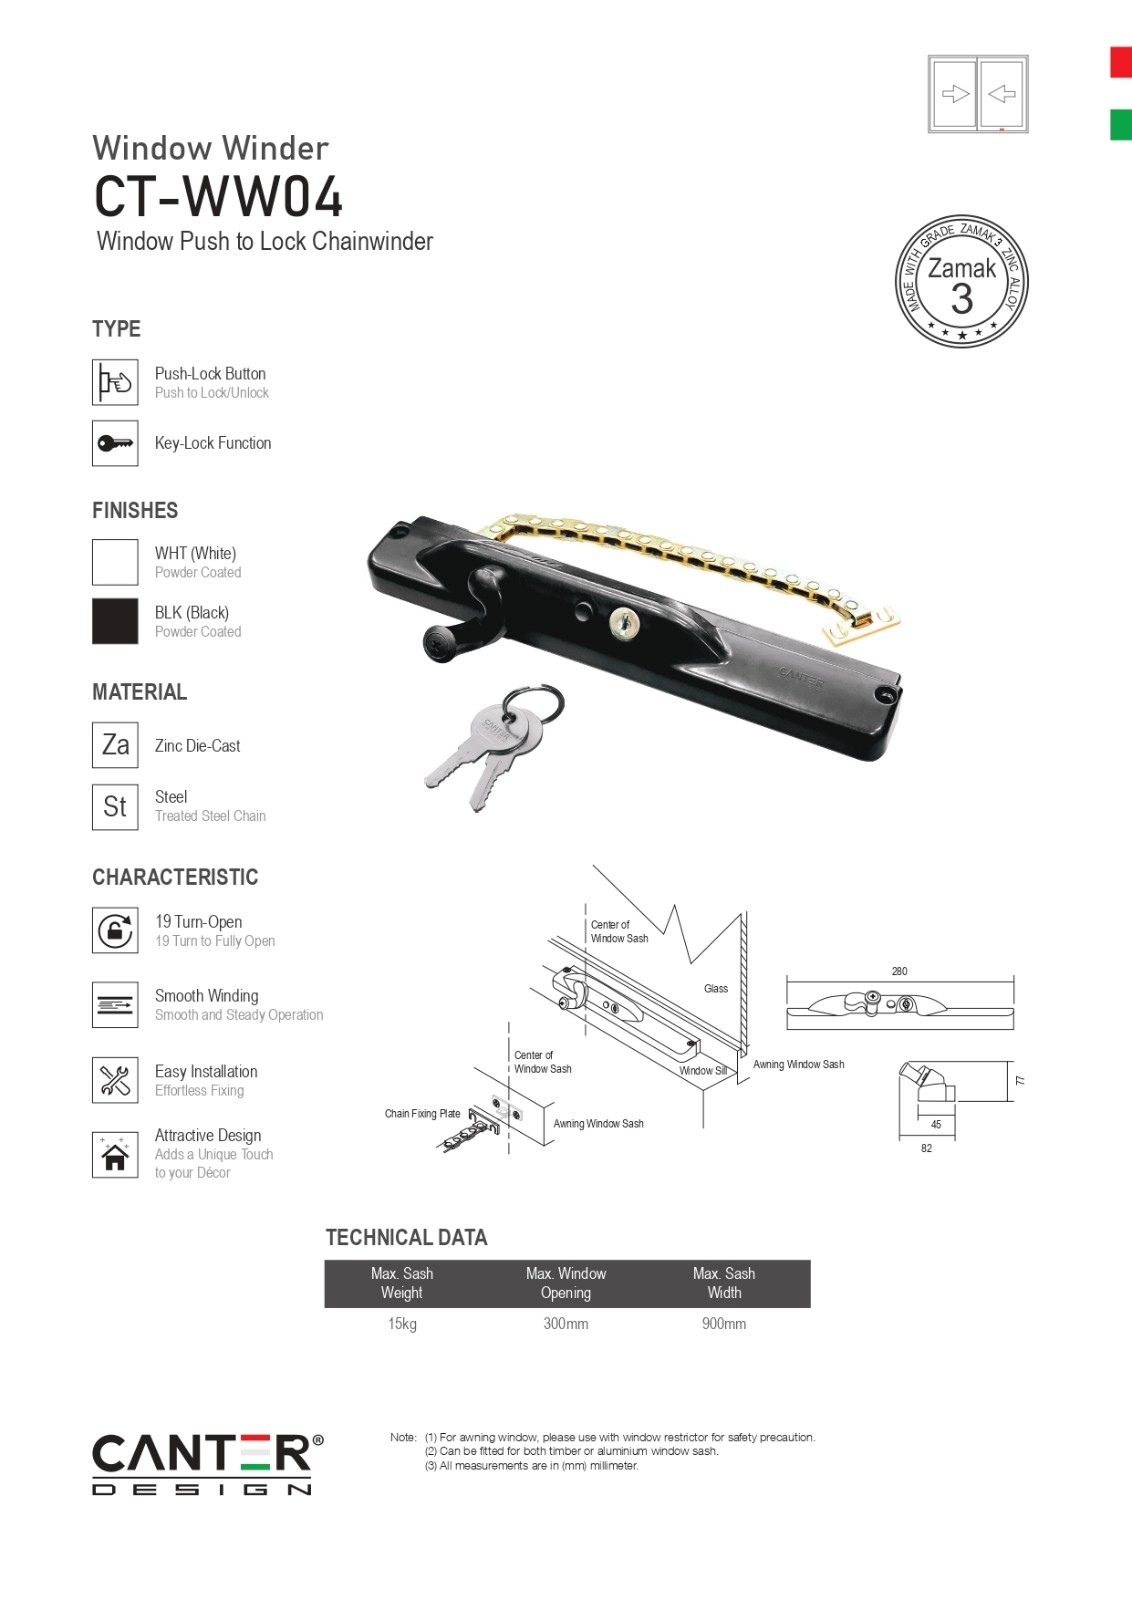 Canter Design TECA Catalogue 132 Teca Locks Deadbolt Lock / Door Lock / Digital Lock / Smart Lock  Catalog & Brochure